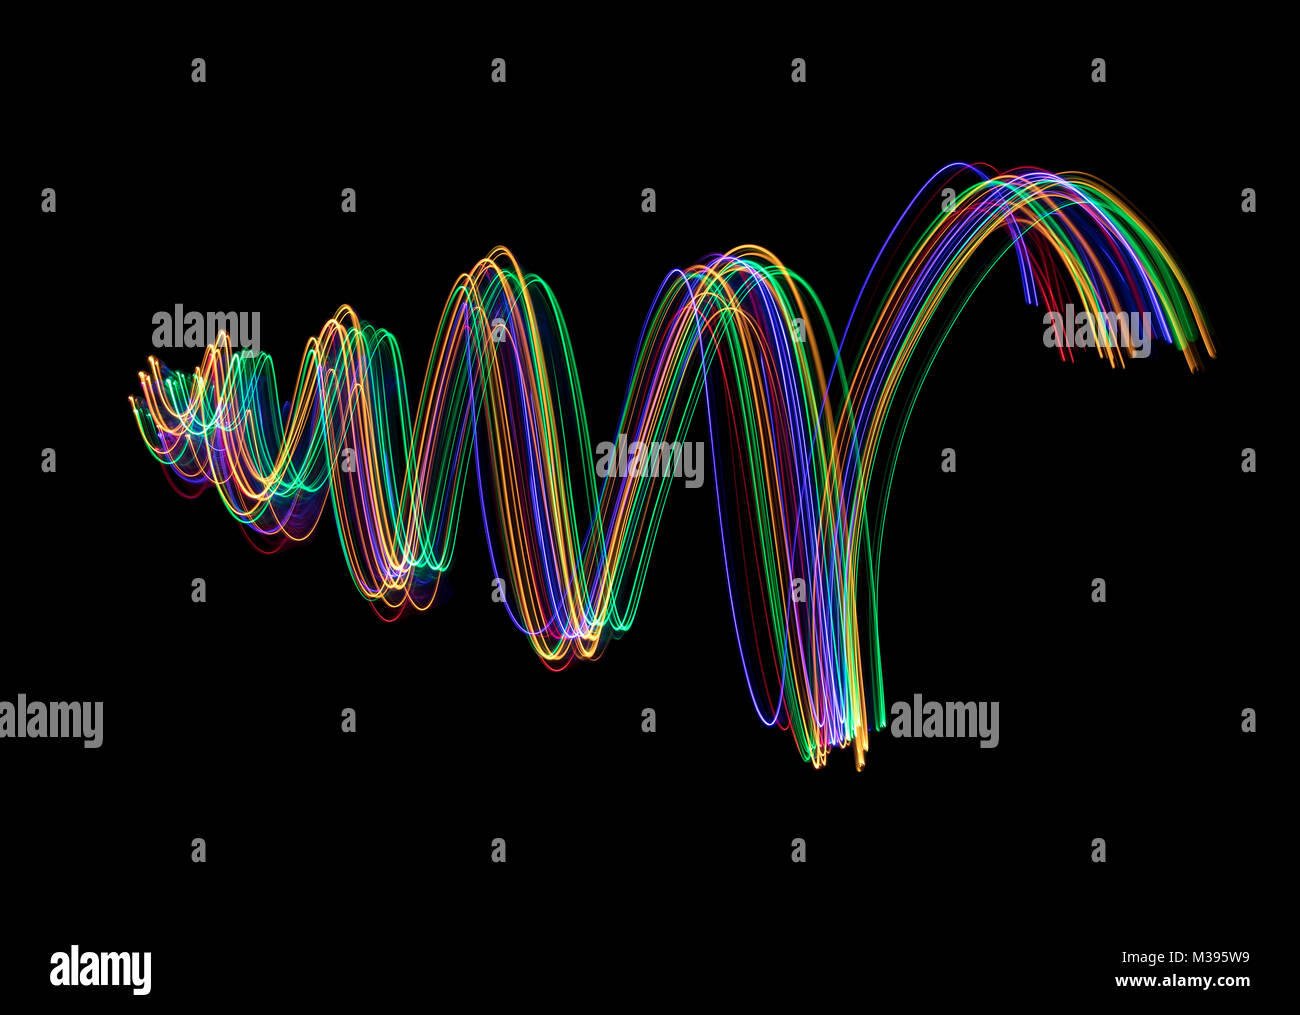 Multi colore tracce di luce in un cono a forma di spirale, suggerendo un albero di Natale o aumentando il movimento. Foto Stock